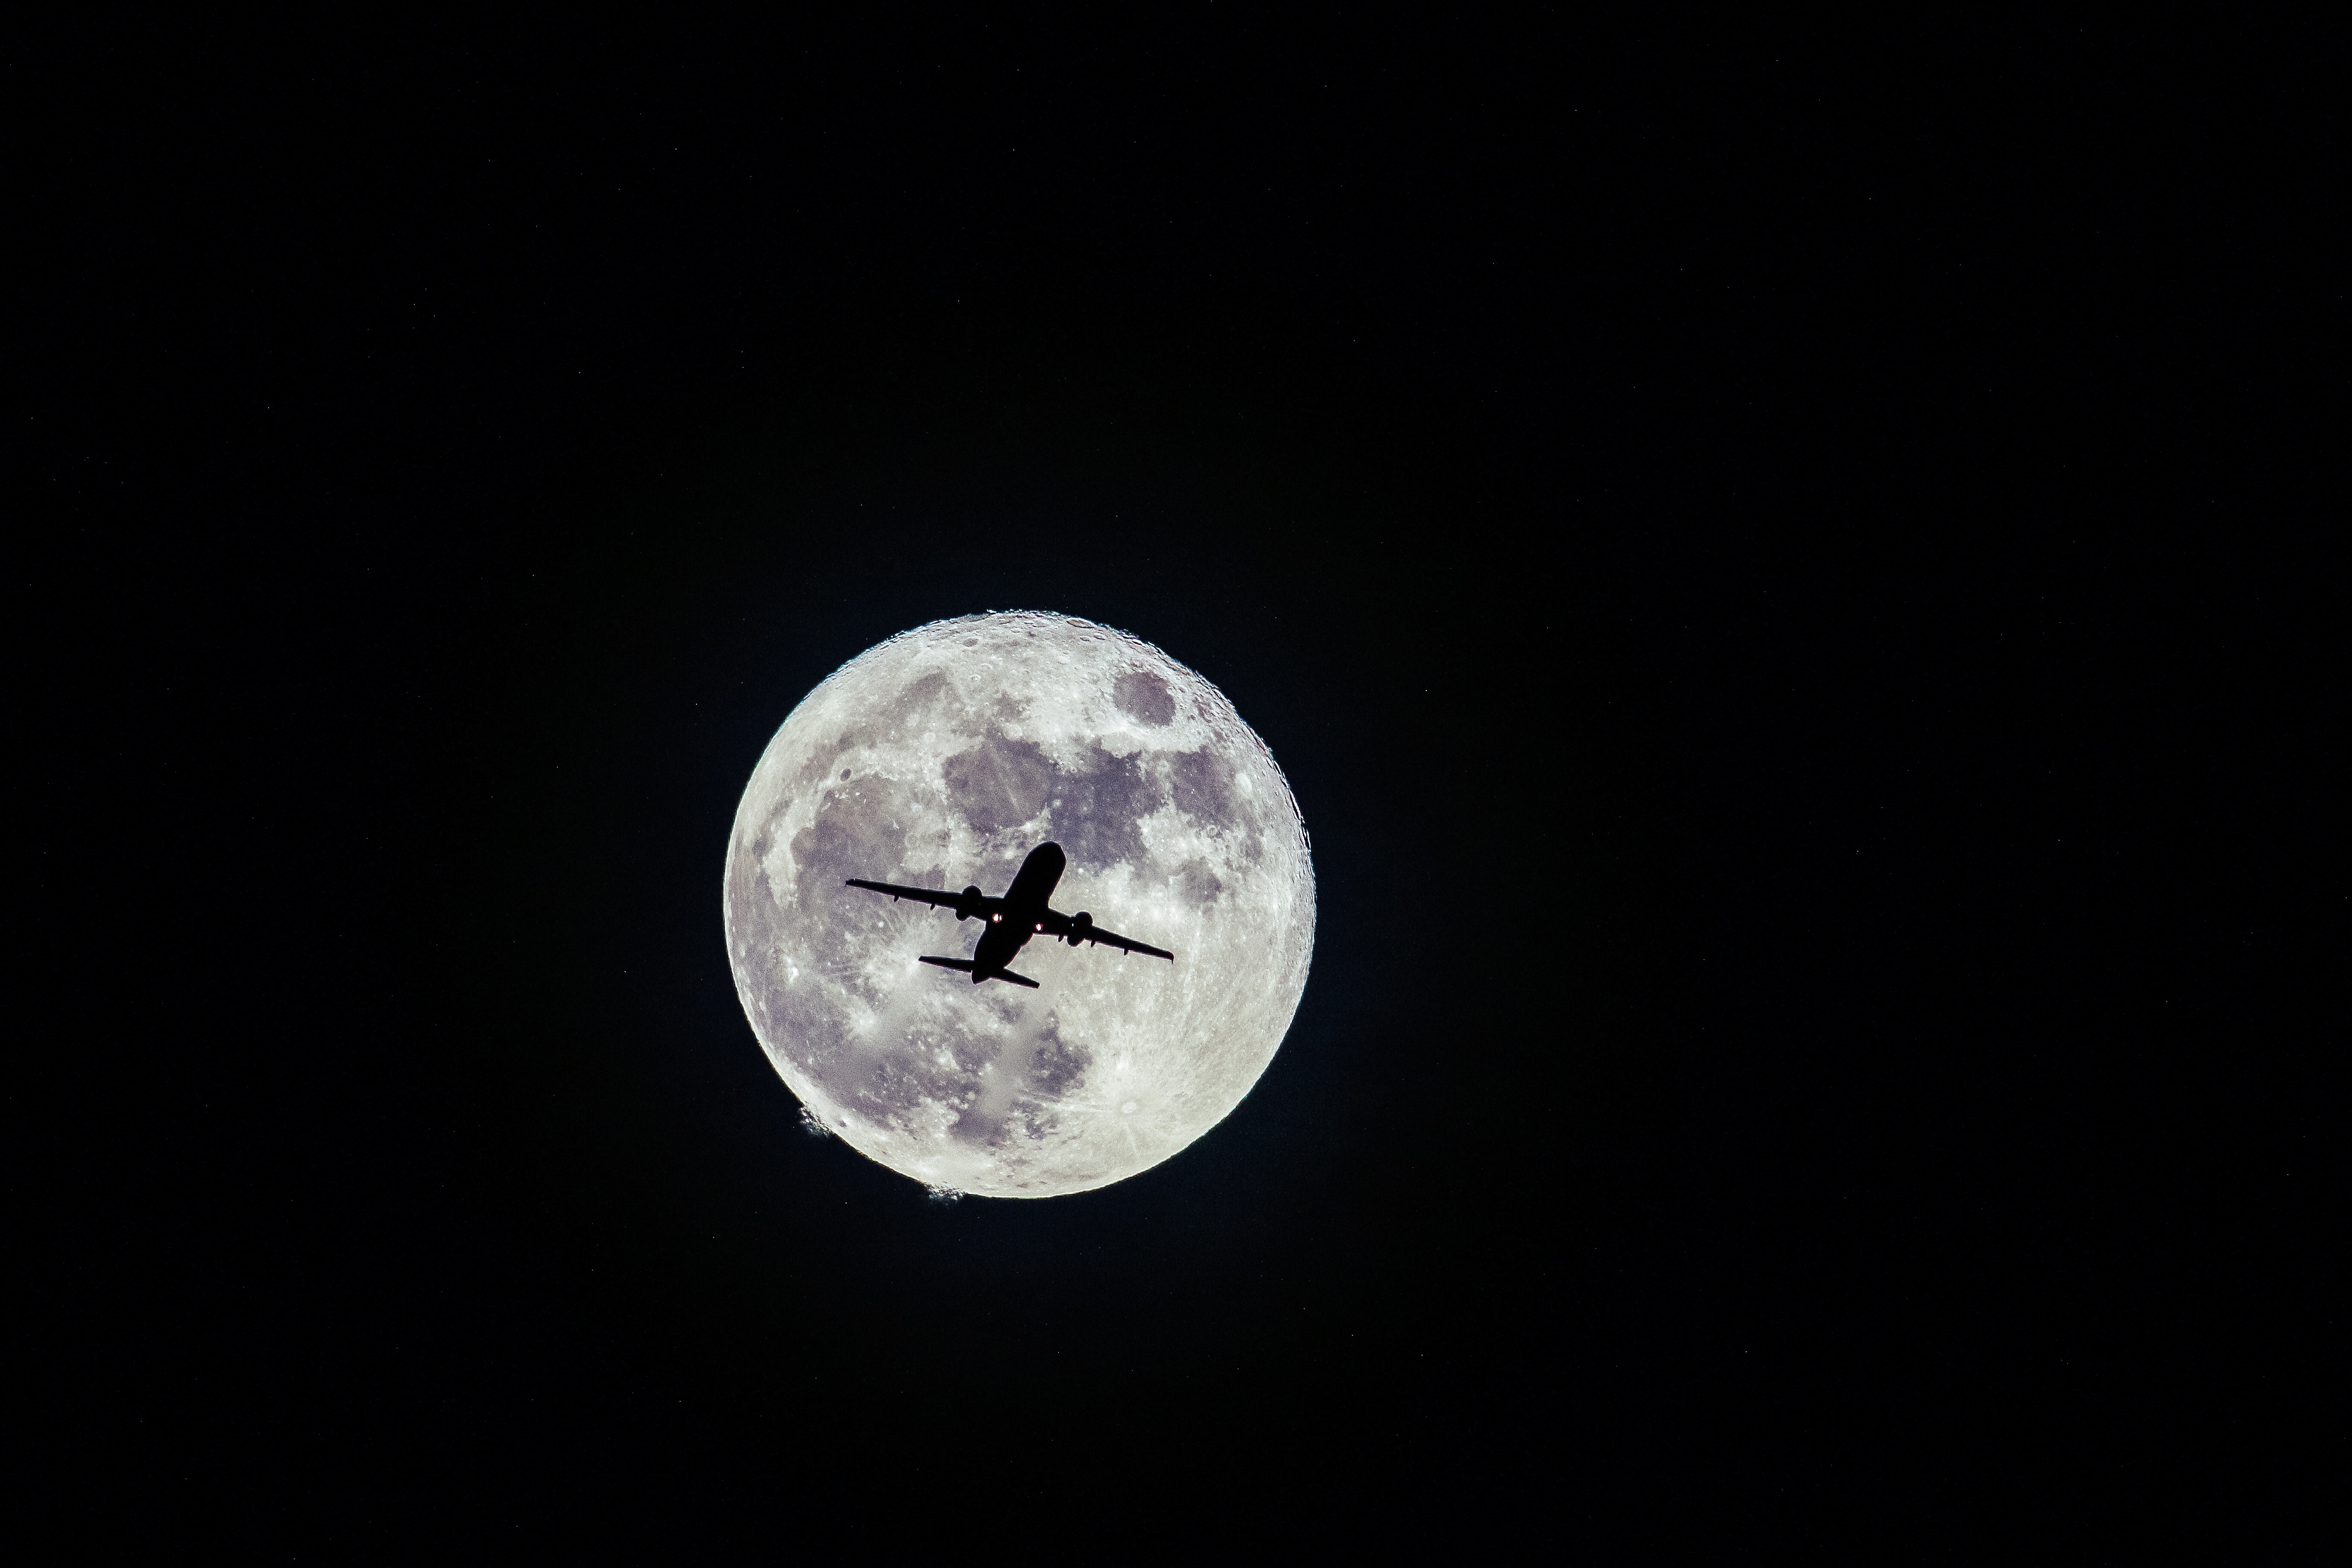 Скачать обои бесплатно Самолет, Полет, Луна, Чб картинка на рабочий стол ПК